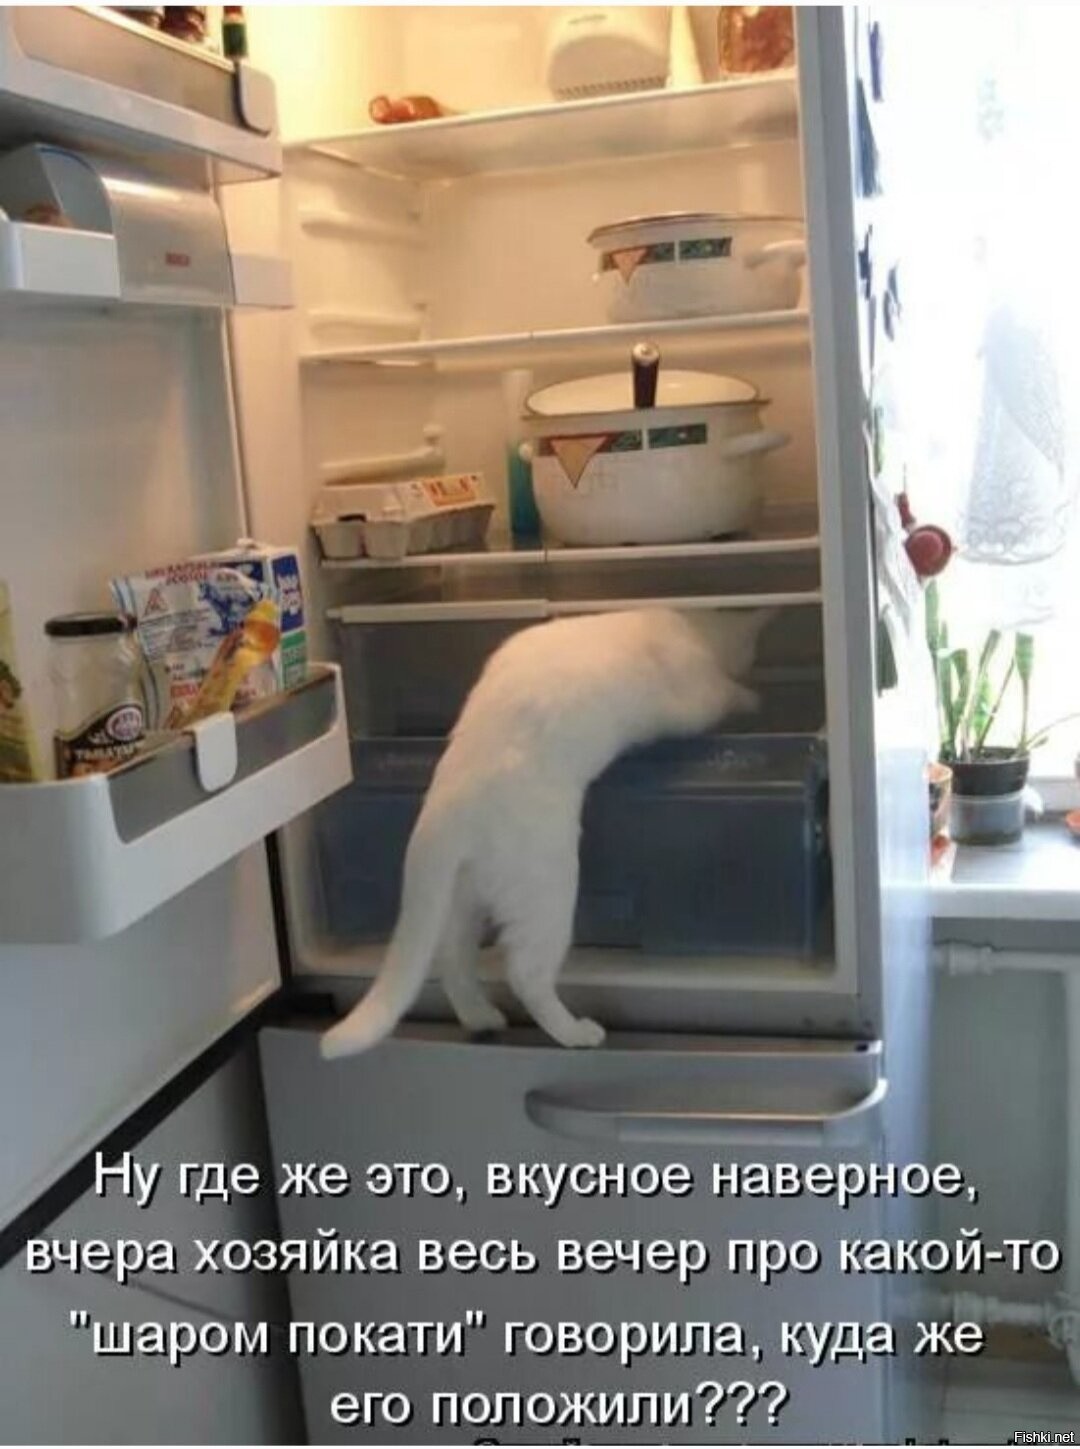 В холодильнике есть мясо. Прикольный холодильник. Котик в холодильнике. Кот залез в холодильник. Кот ищет в холодильнике.